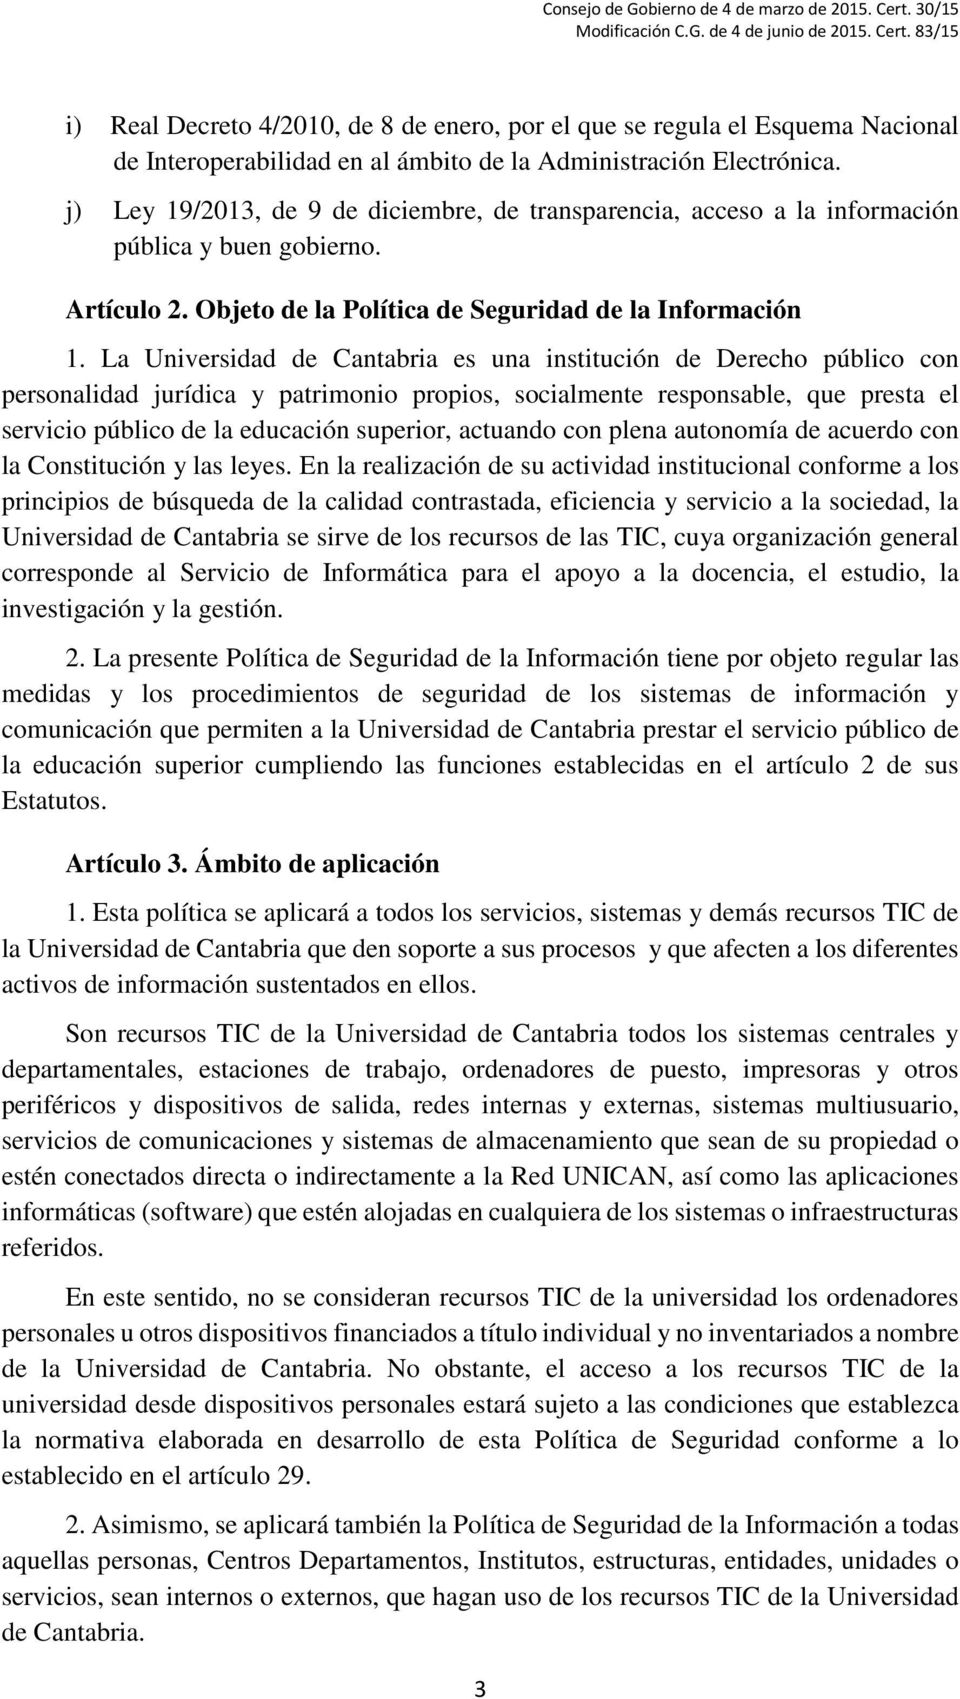 La Universidad de Cantabria es una institución de Derecho público con personalidad jurídica y patrimonio propios, socialmente responsable, que presta el servicio público de la educación superior,